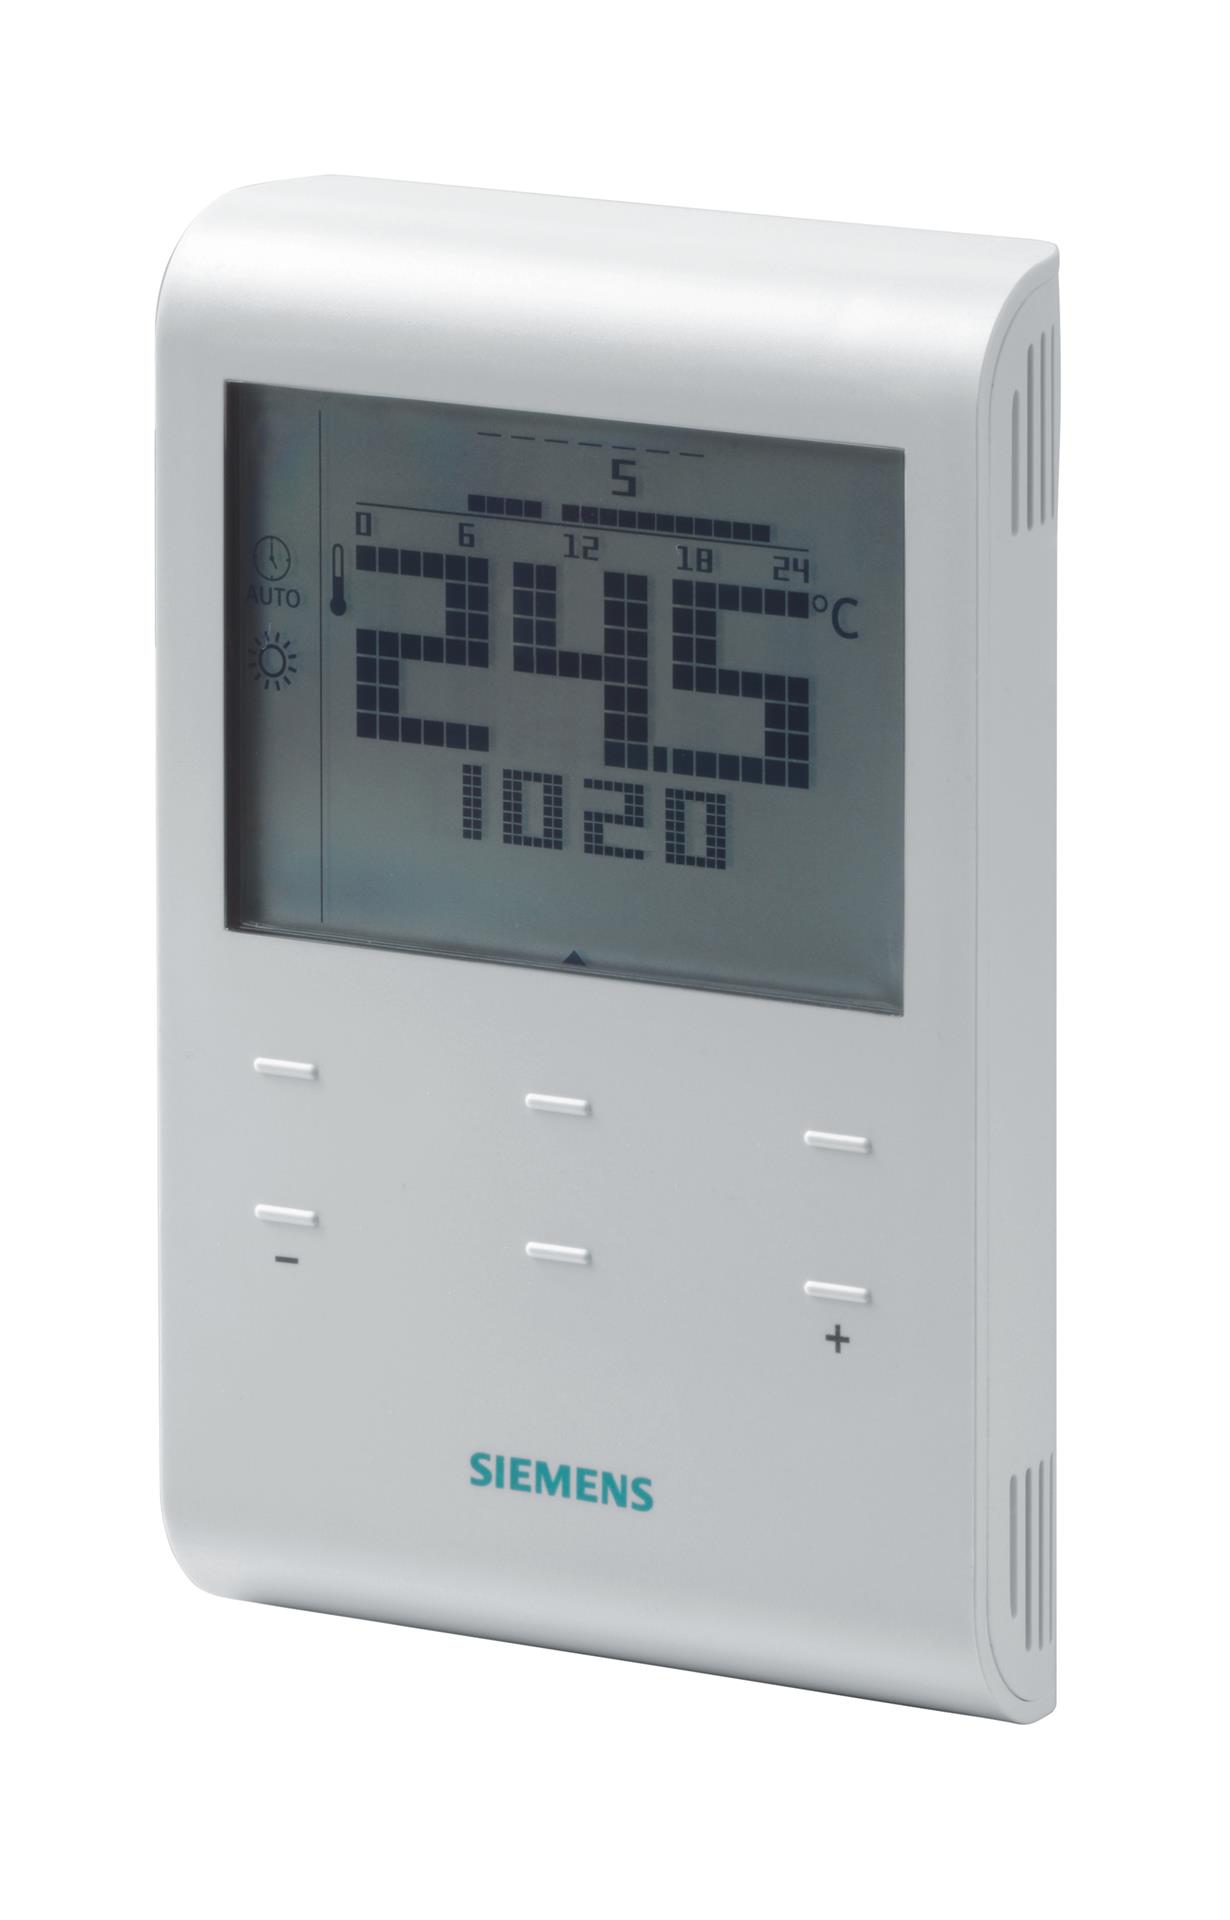 RDE100.1-XA | S55770-T338 SIEMENS Автономные комнатные термостаты цена, купить